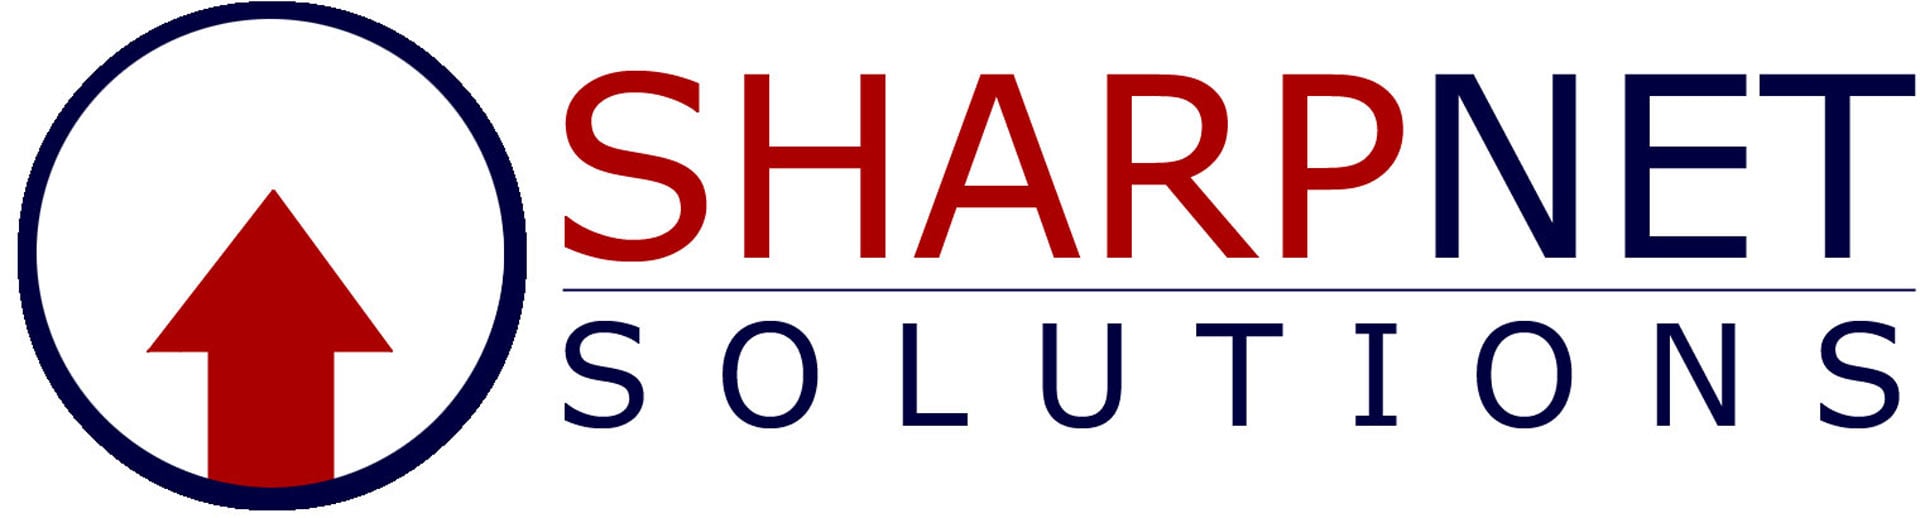 Top Local Online Marketing Business Logo: SharpNet